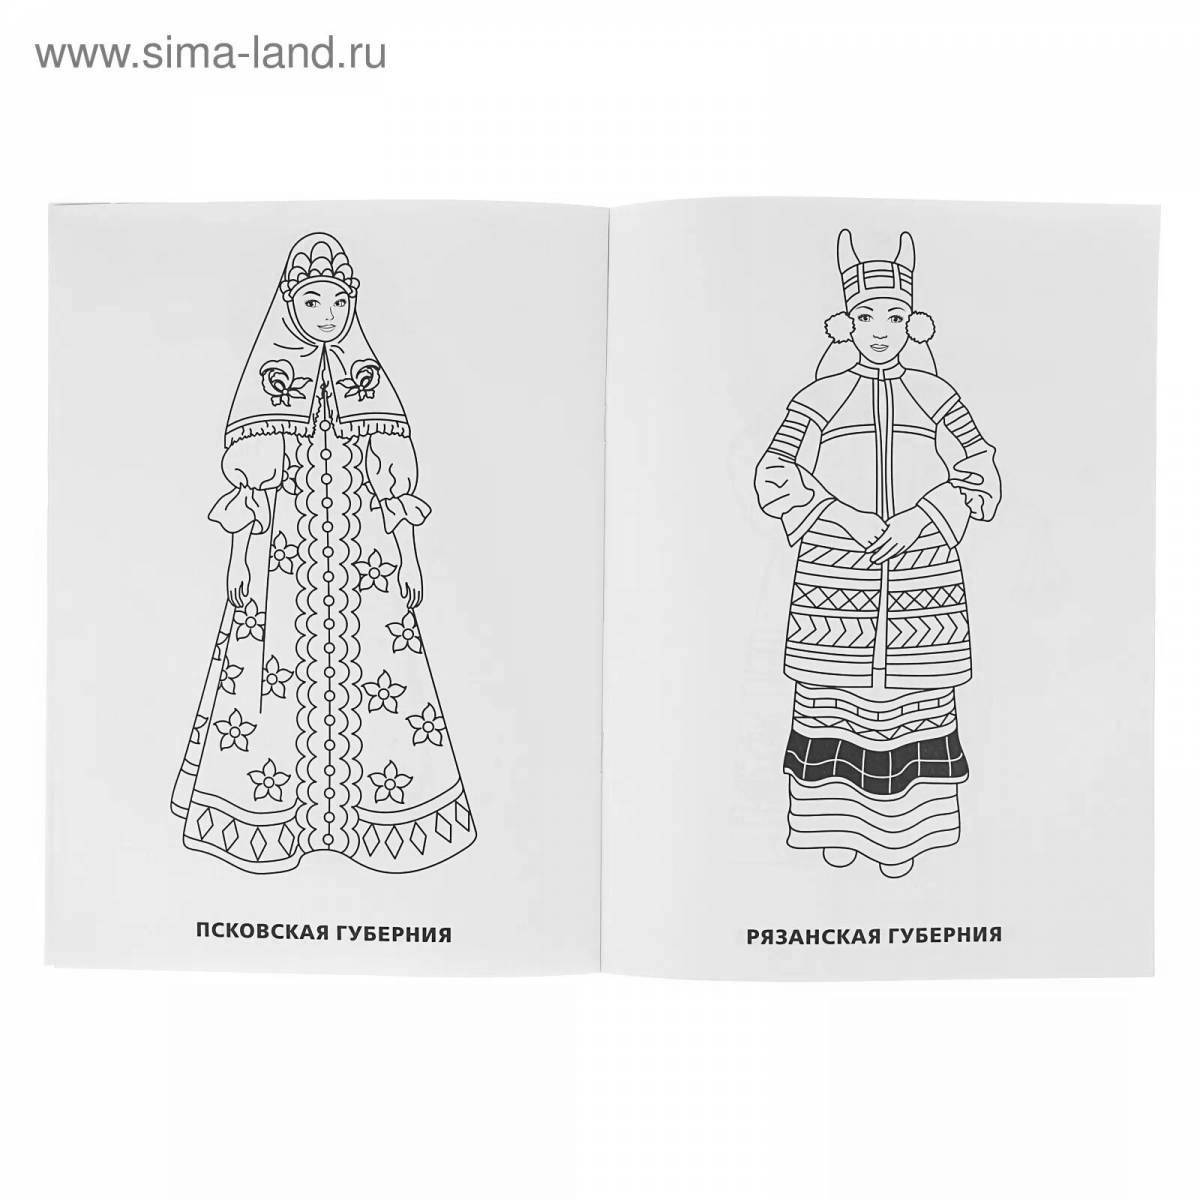 Красочный русский национальный костюм для женщин